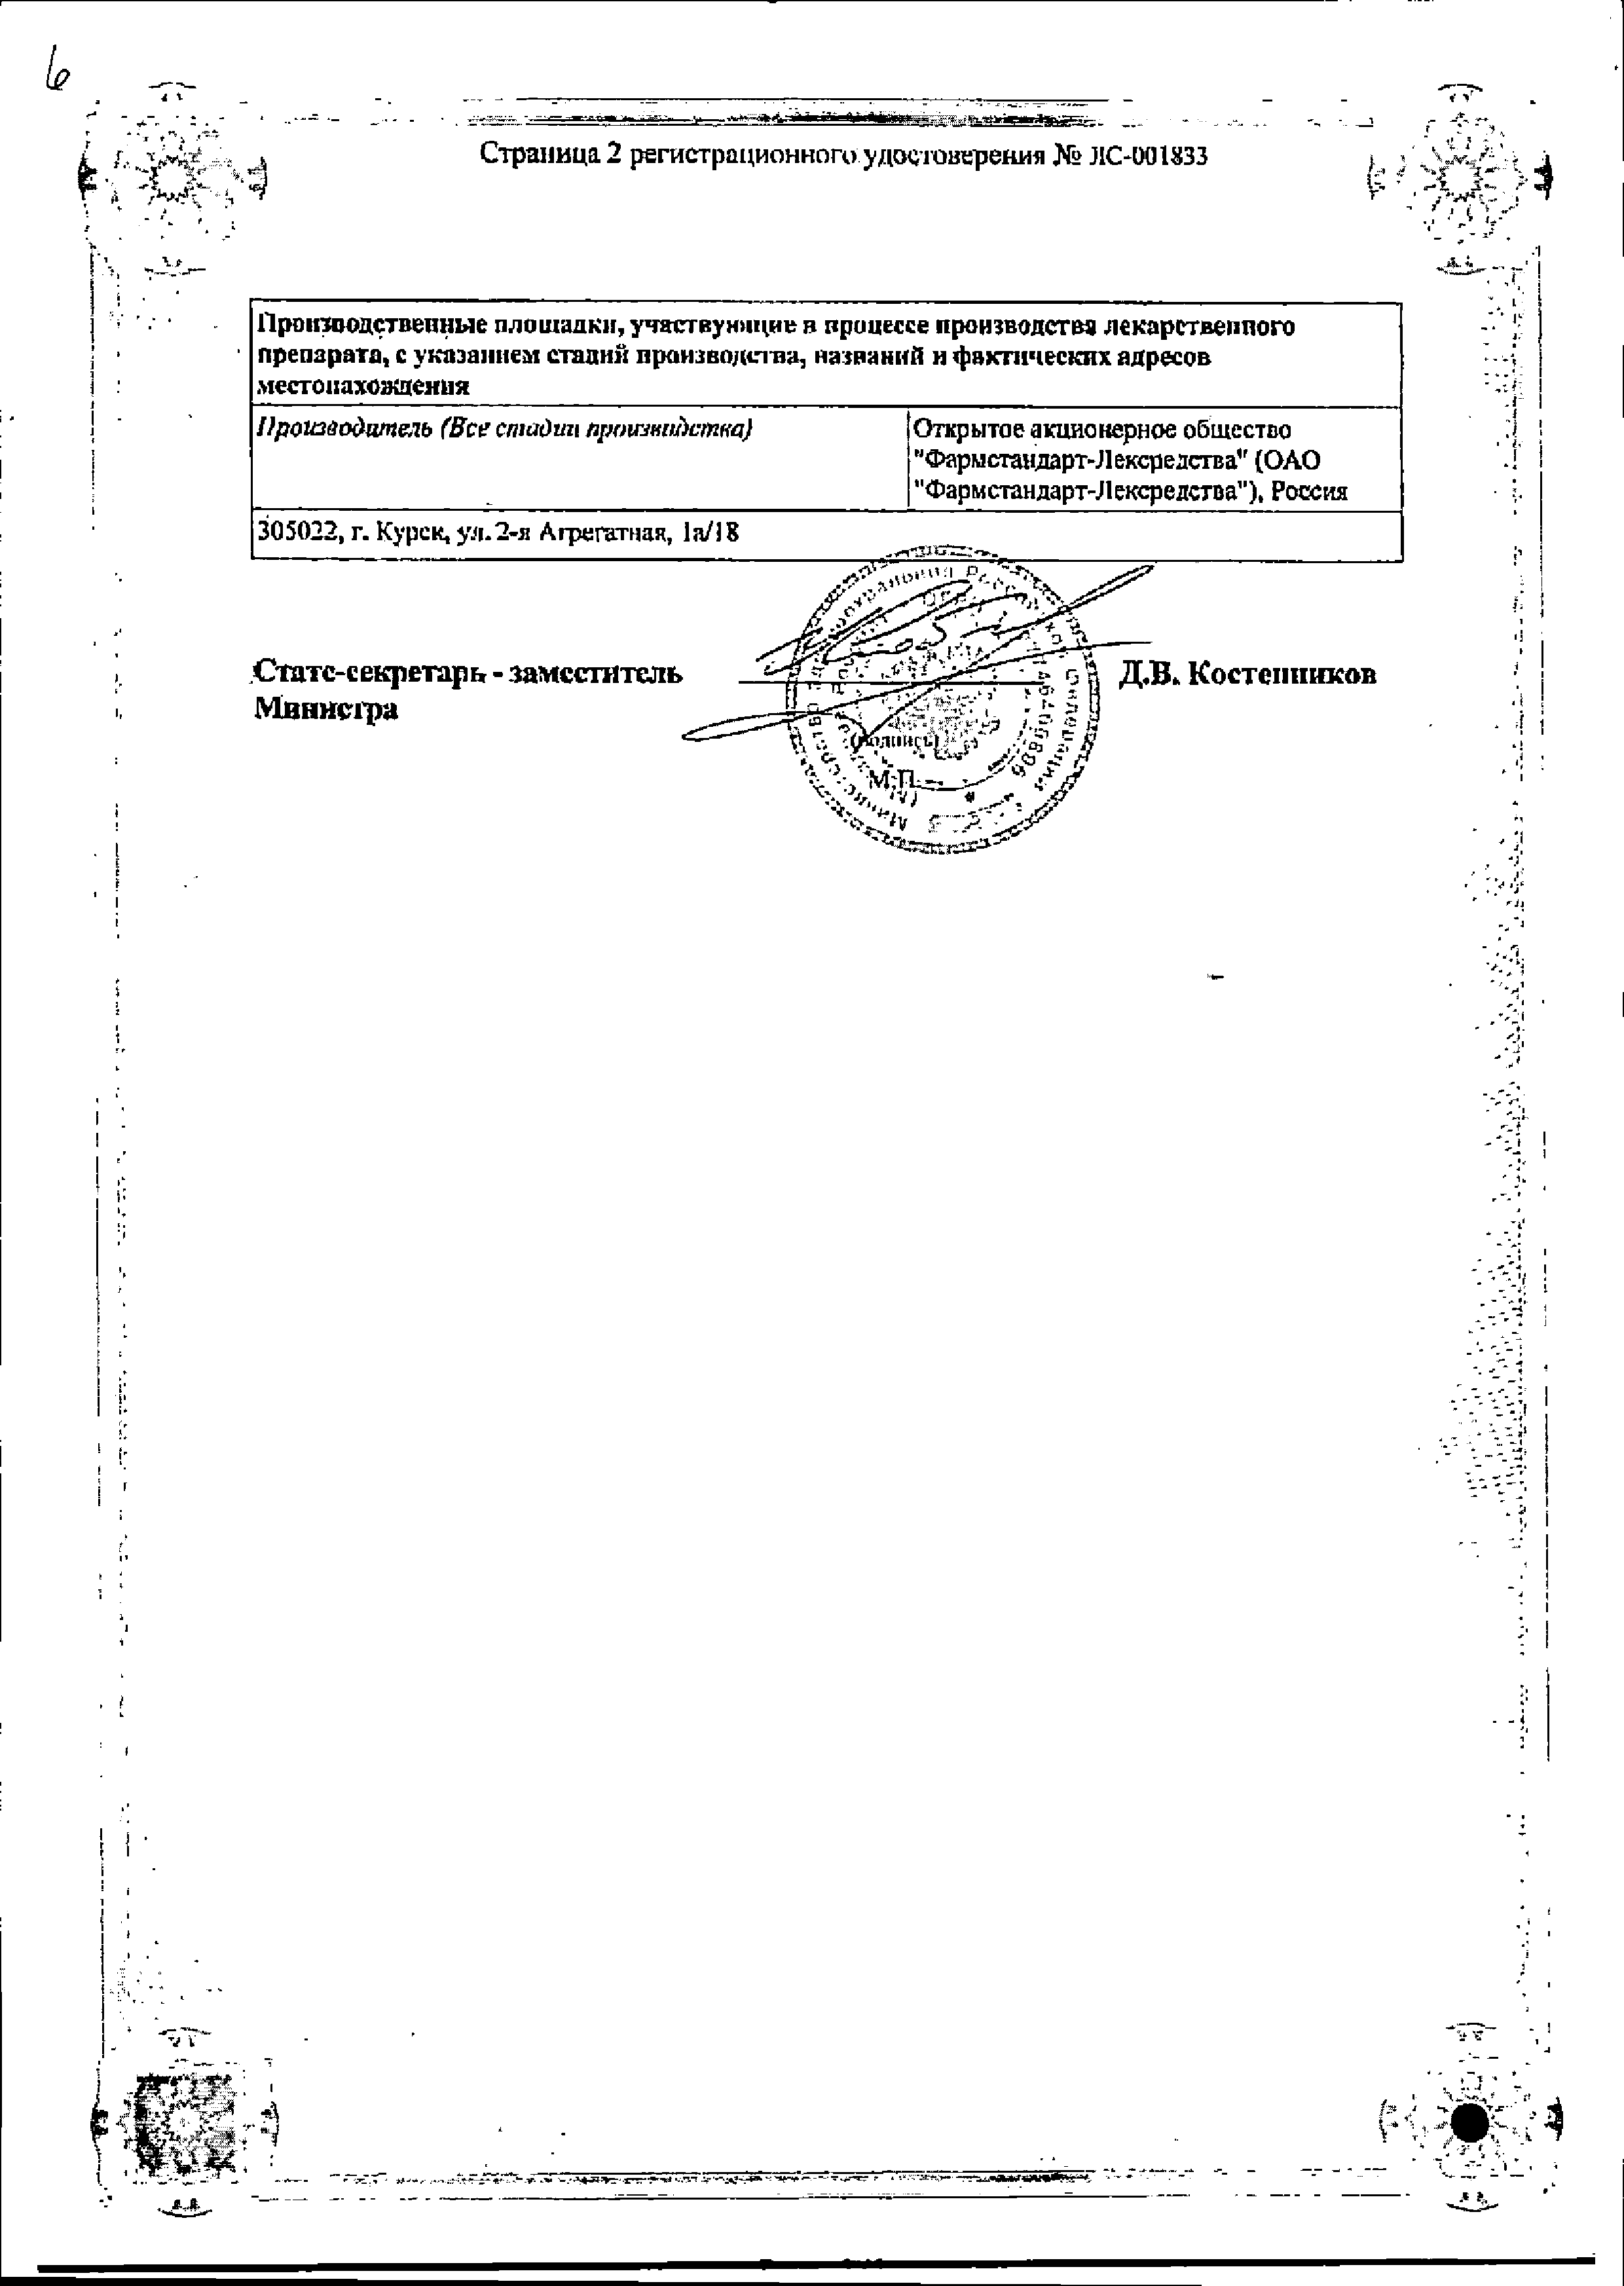 Мукалтин сертификат